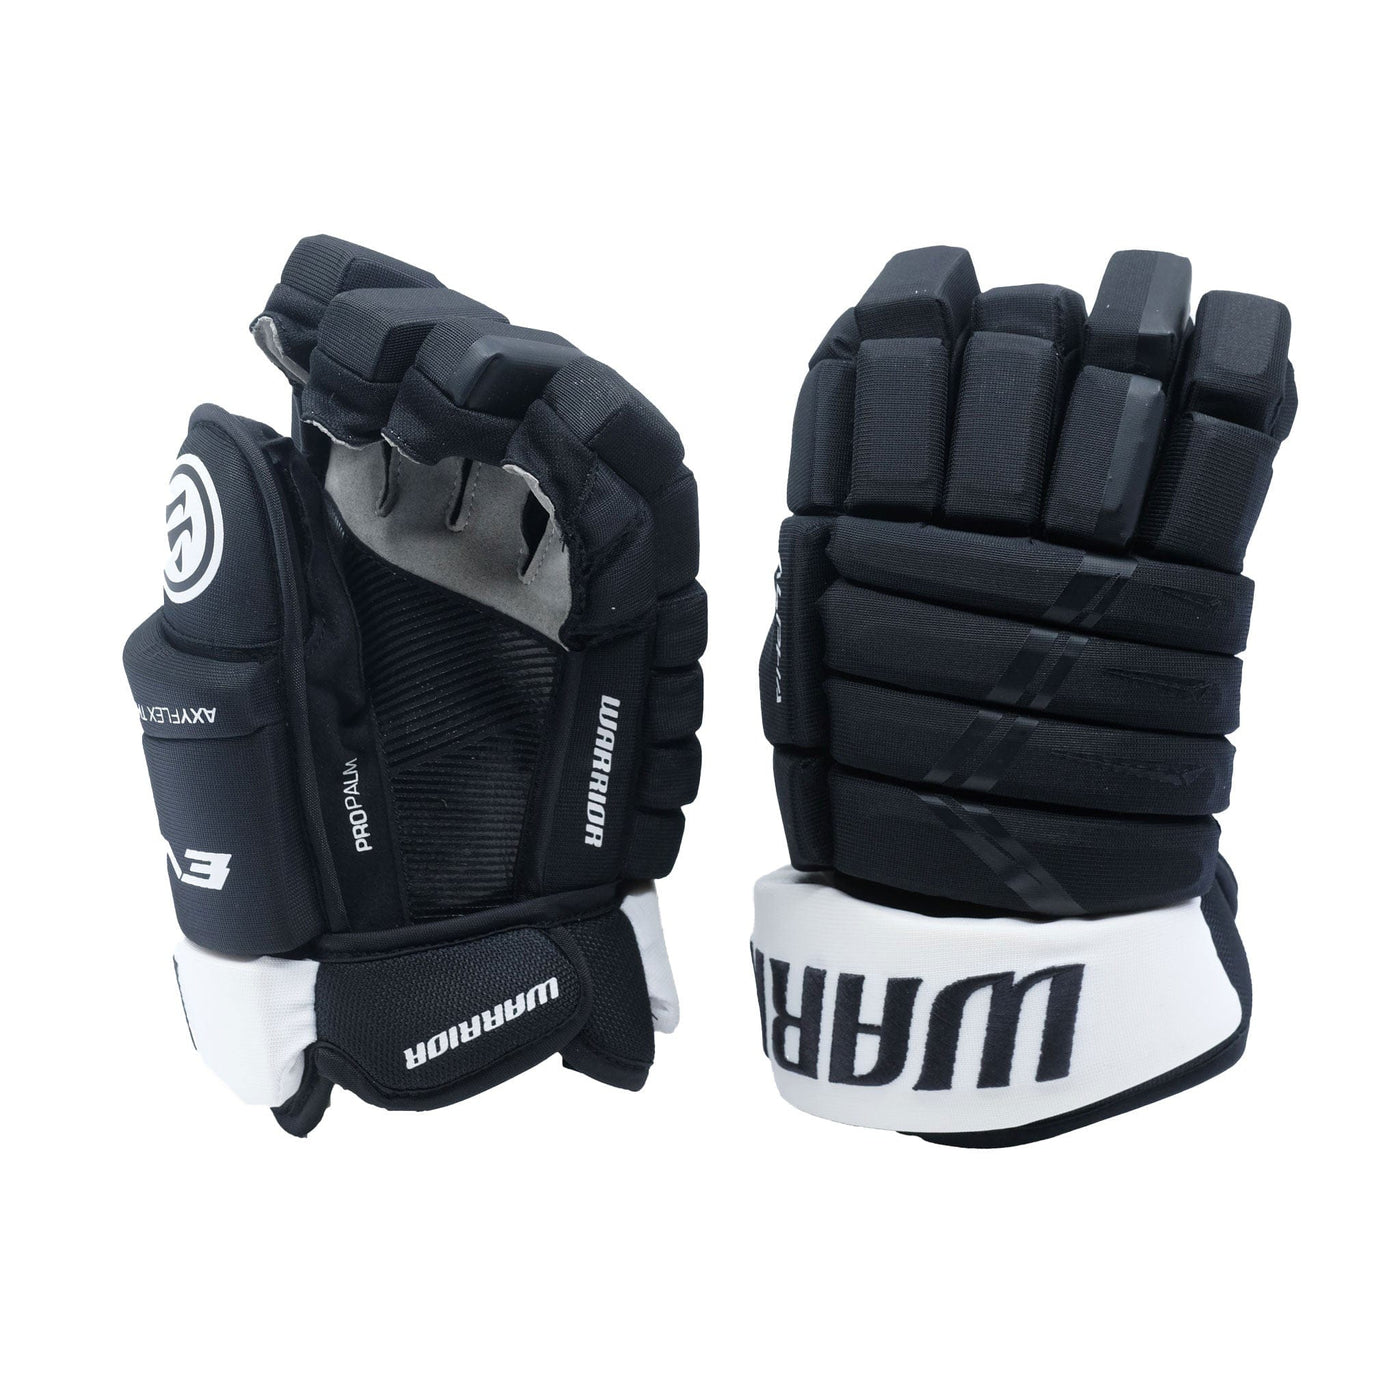 Warrior Evo Lite Senior Hockey Gloves